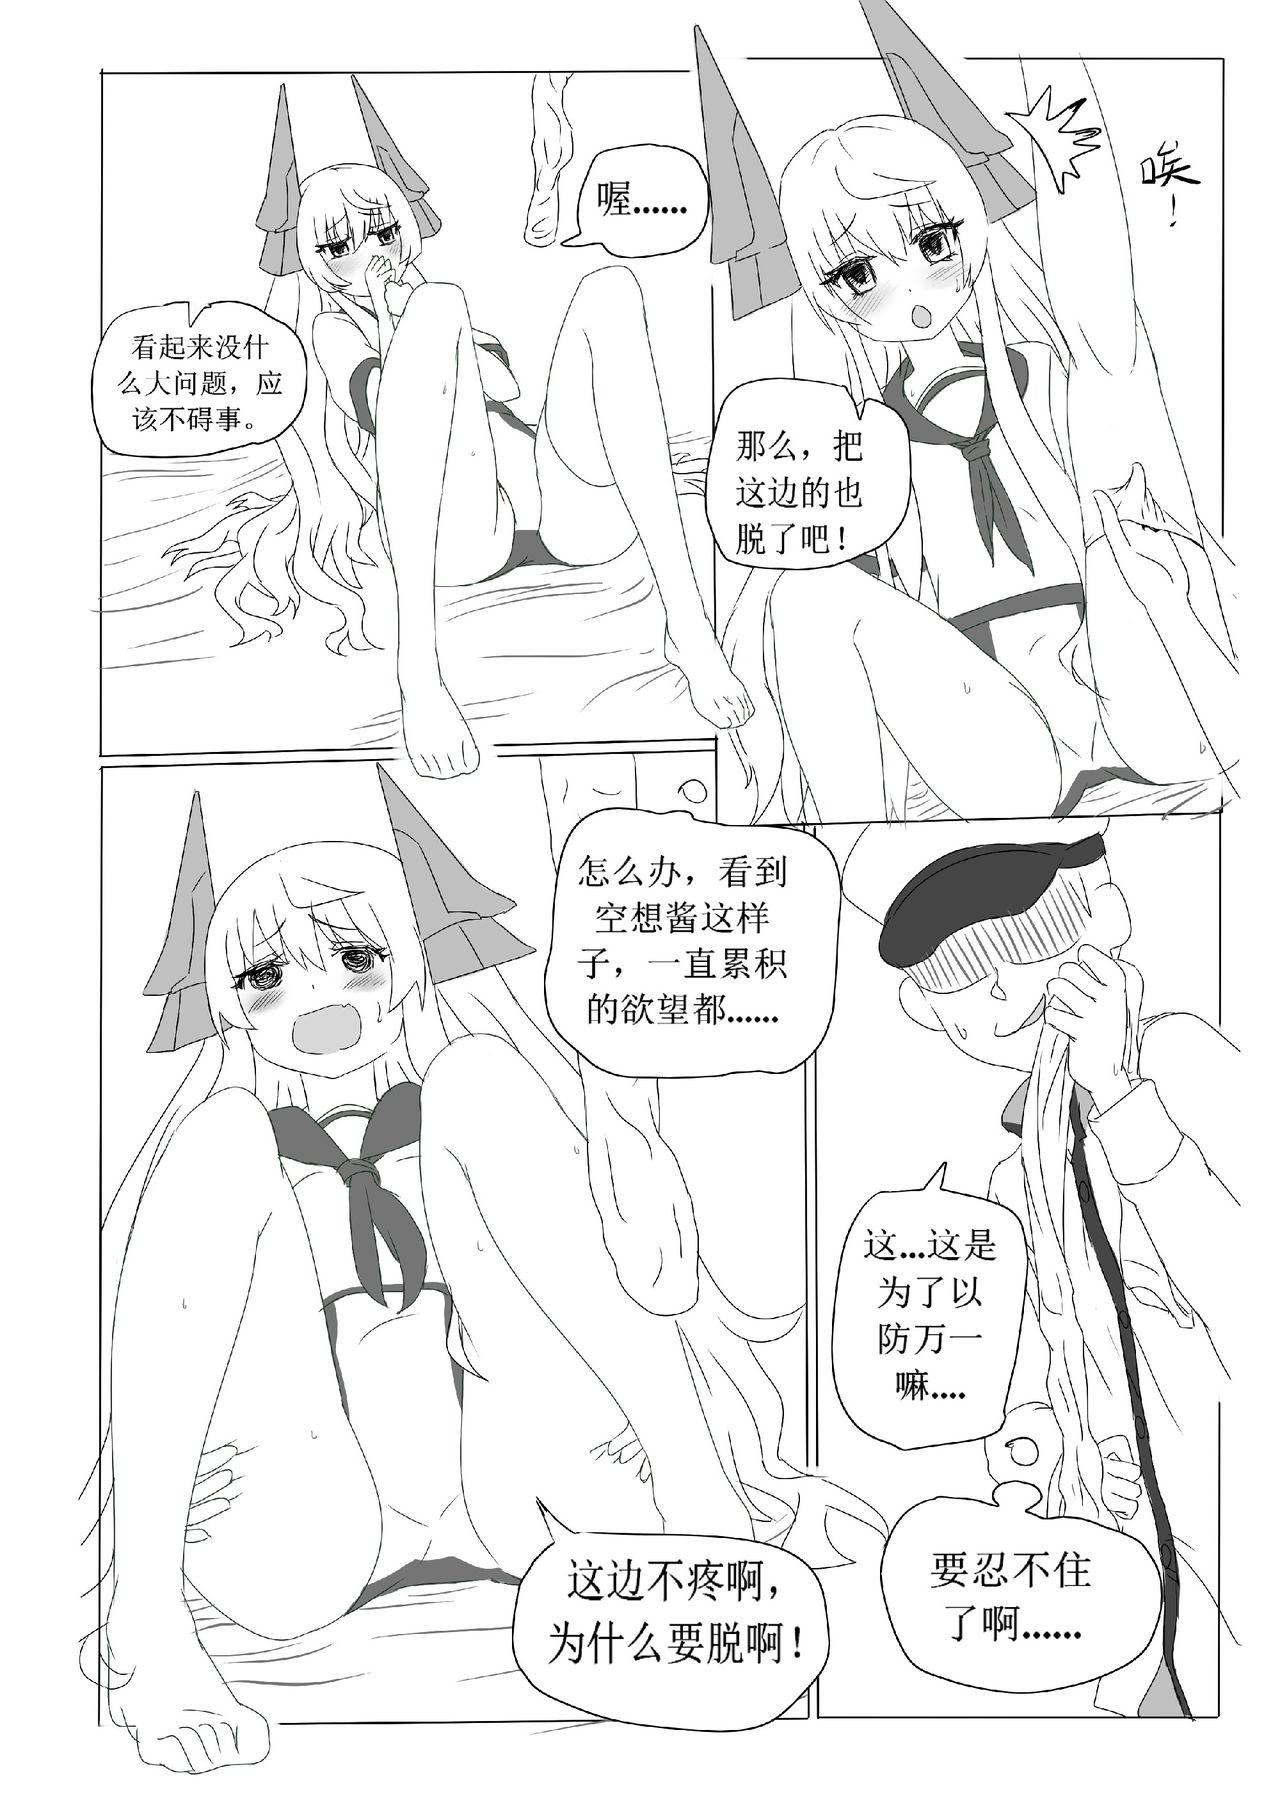 Liveshow 一本正经的空想H本子 - Warship girls Orgia - Page 7